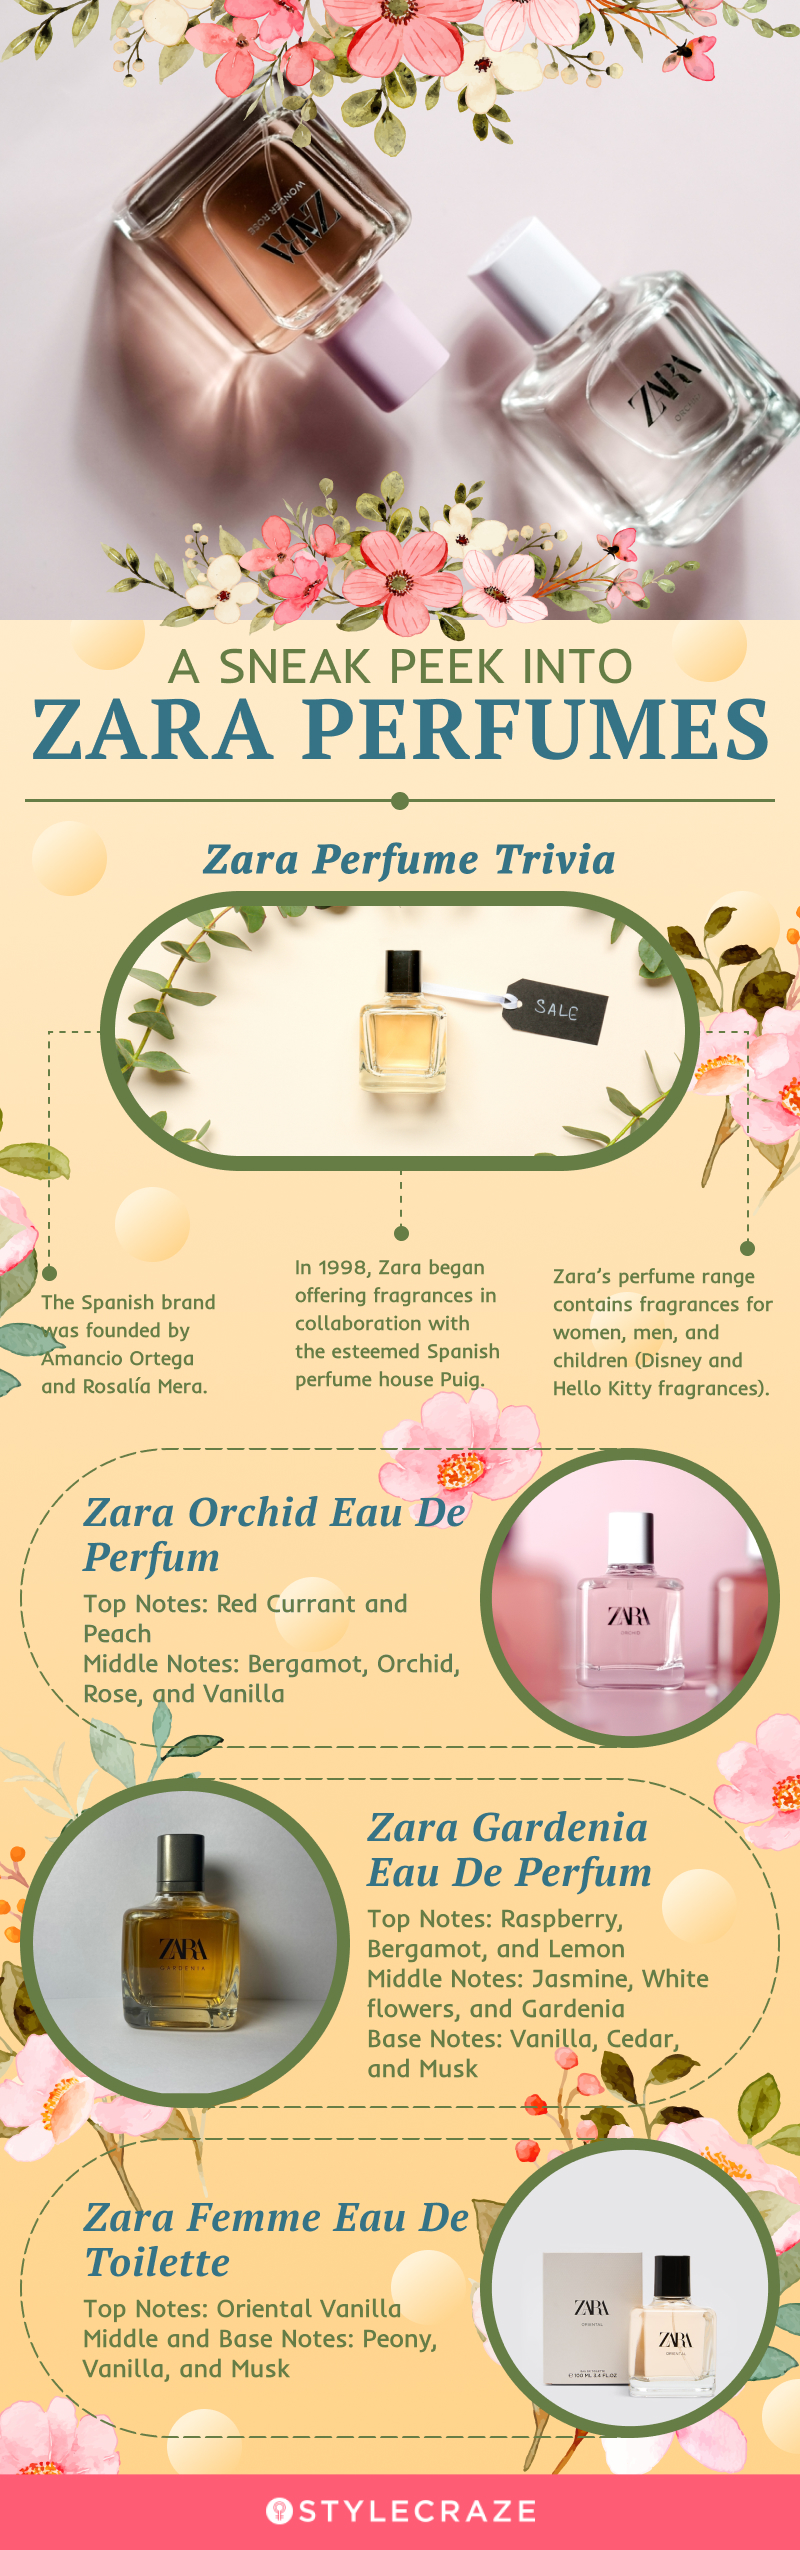 A Sneak Peak Into Zara Perfumes (infographic)